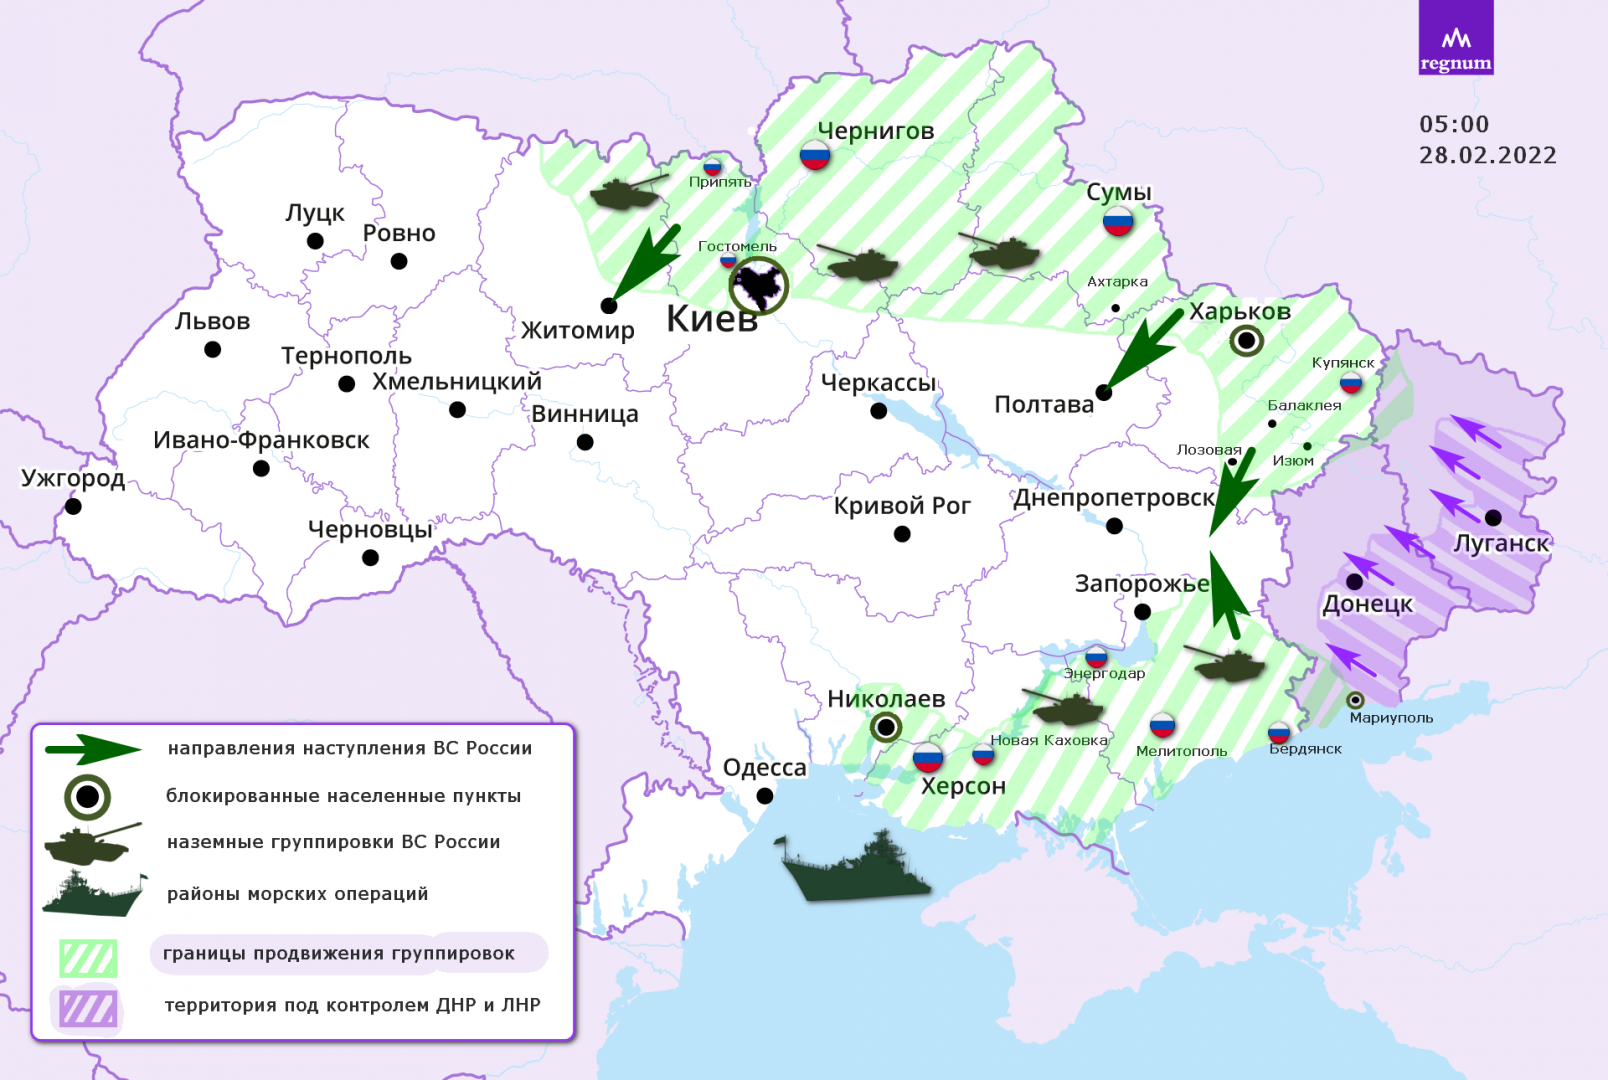 Специальная военная операция России по защите Донбасса. 05:00. 28.02.2022